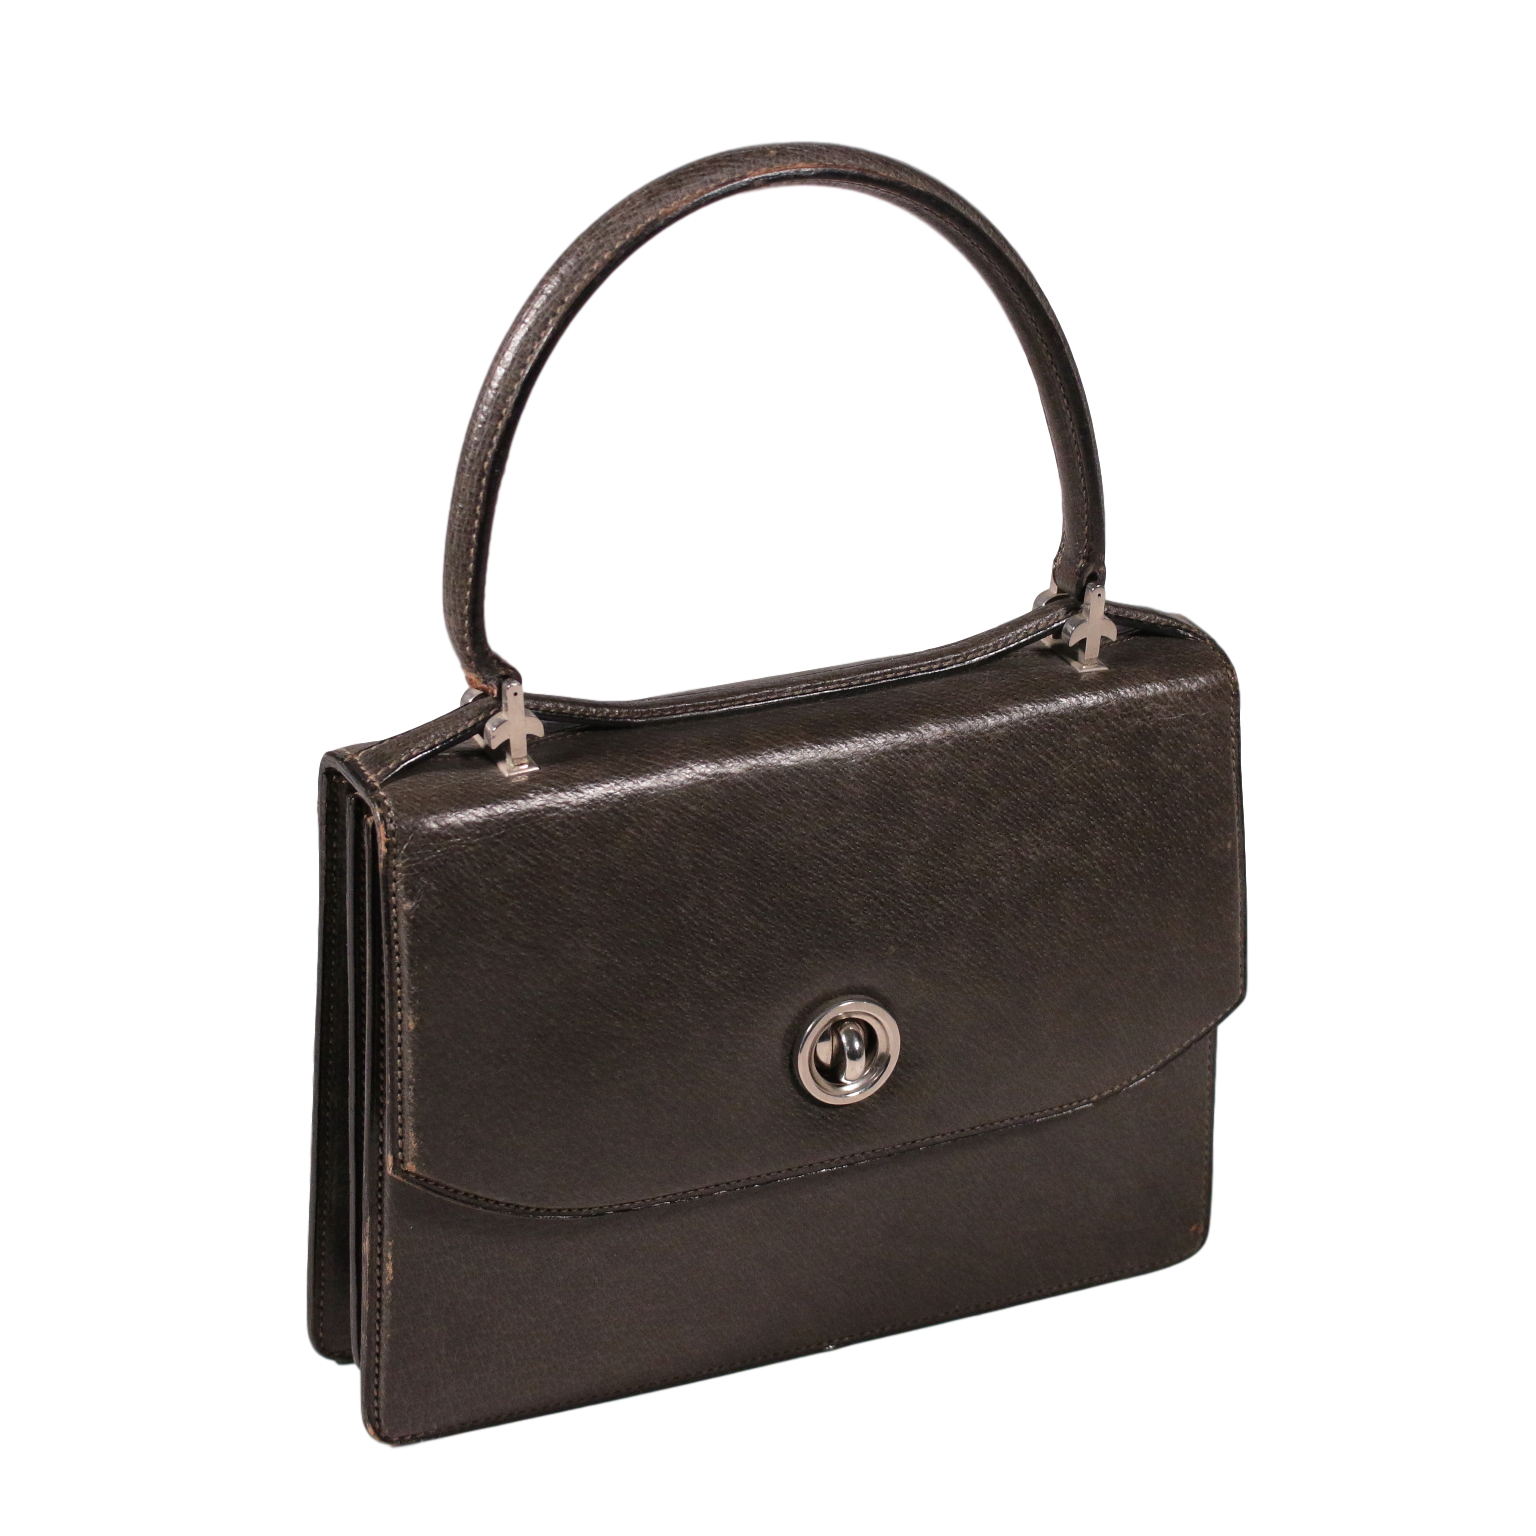 Vintage Gucci Handbag Grey Leather 